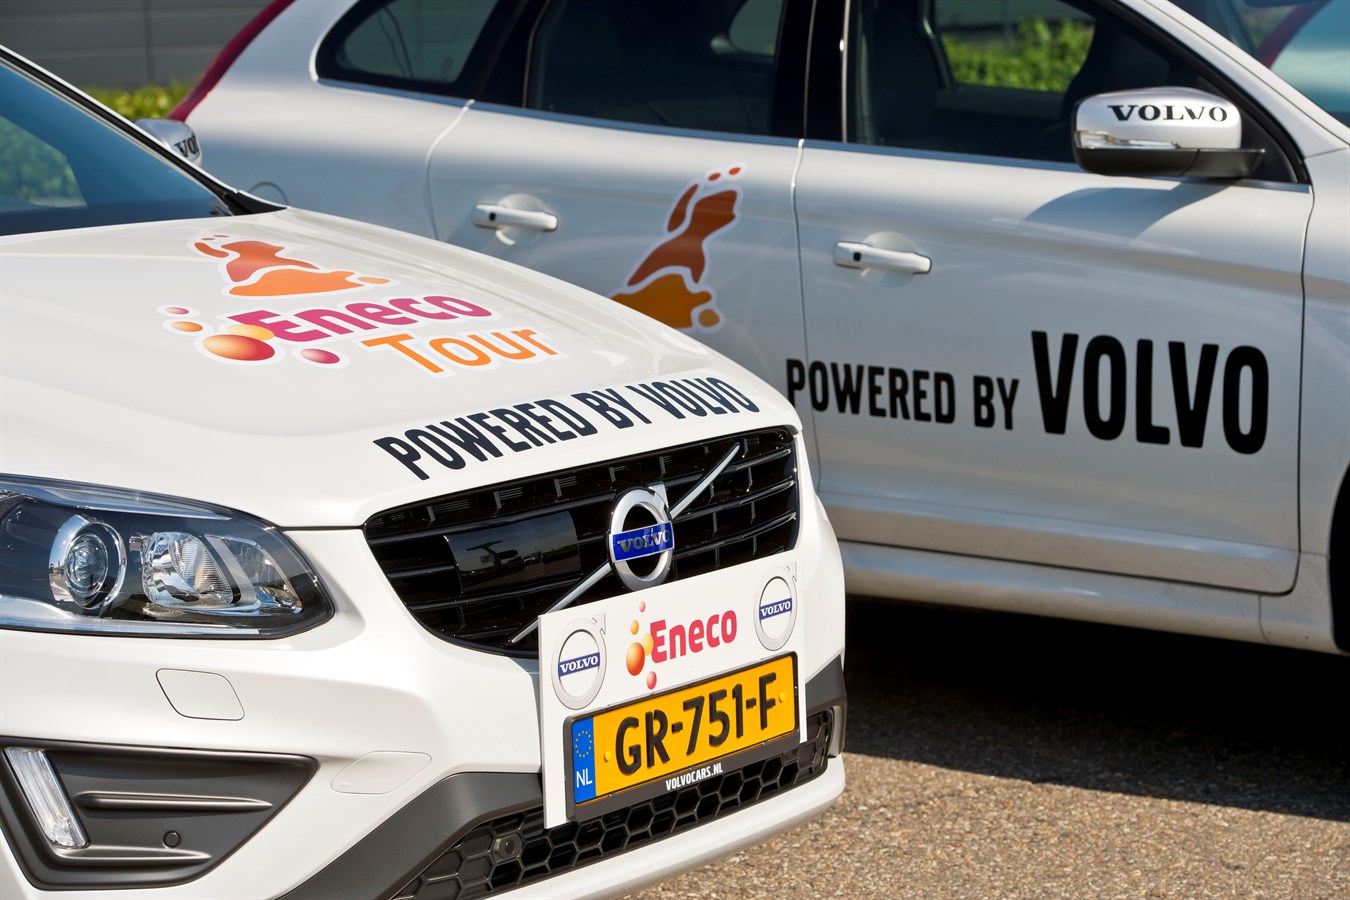 Volvo voorop bij Eneco Tour 2015